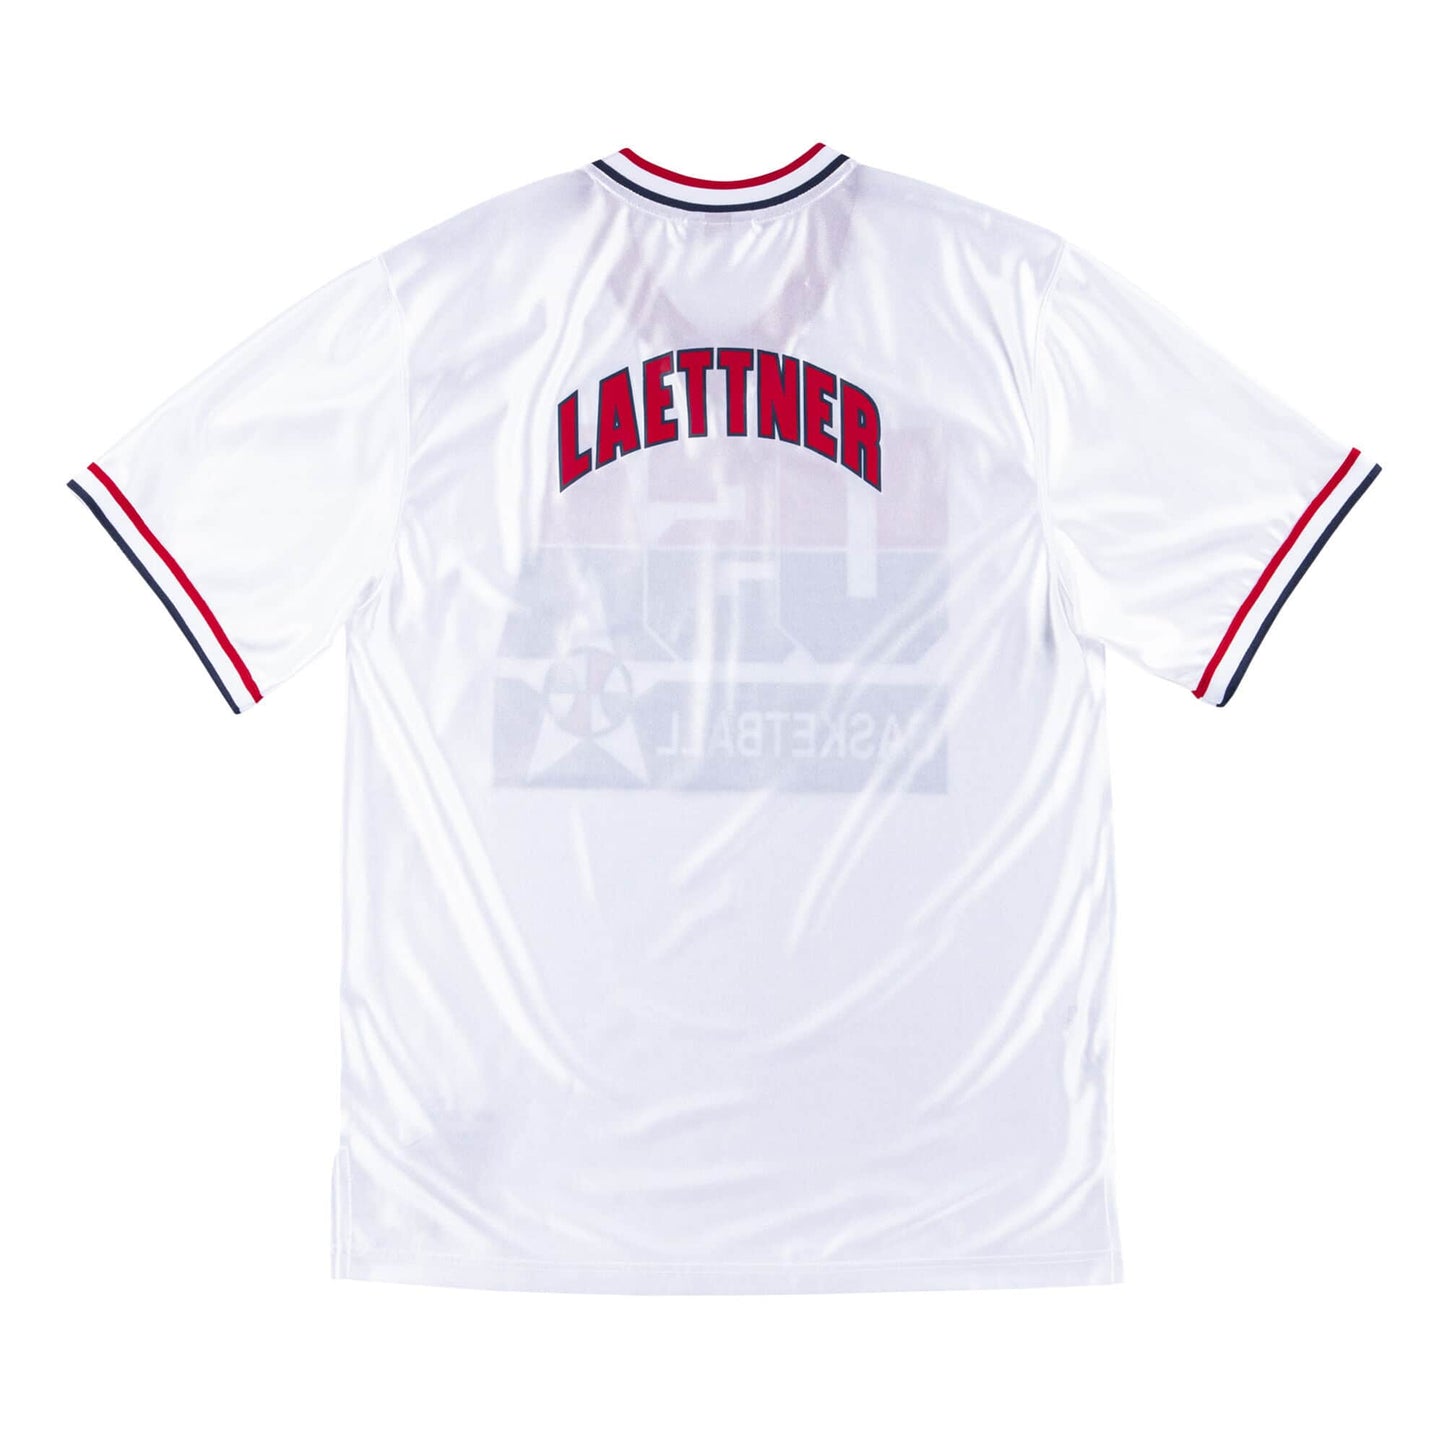 Authentic Shooting Shirt Team USA 1992 Christian Laettner